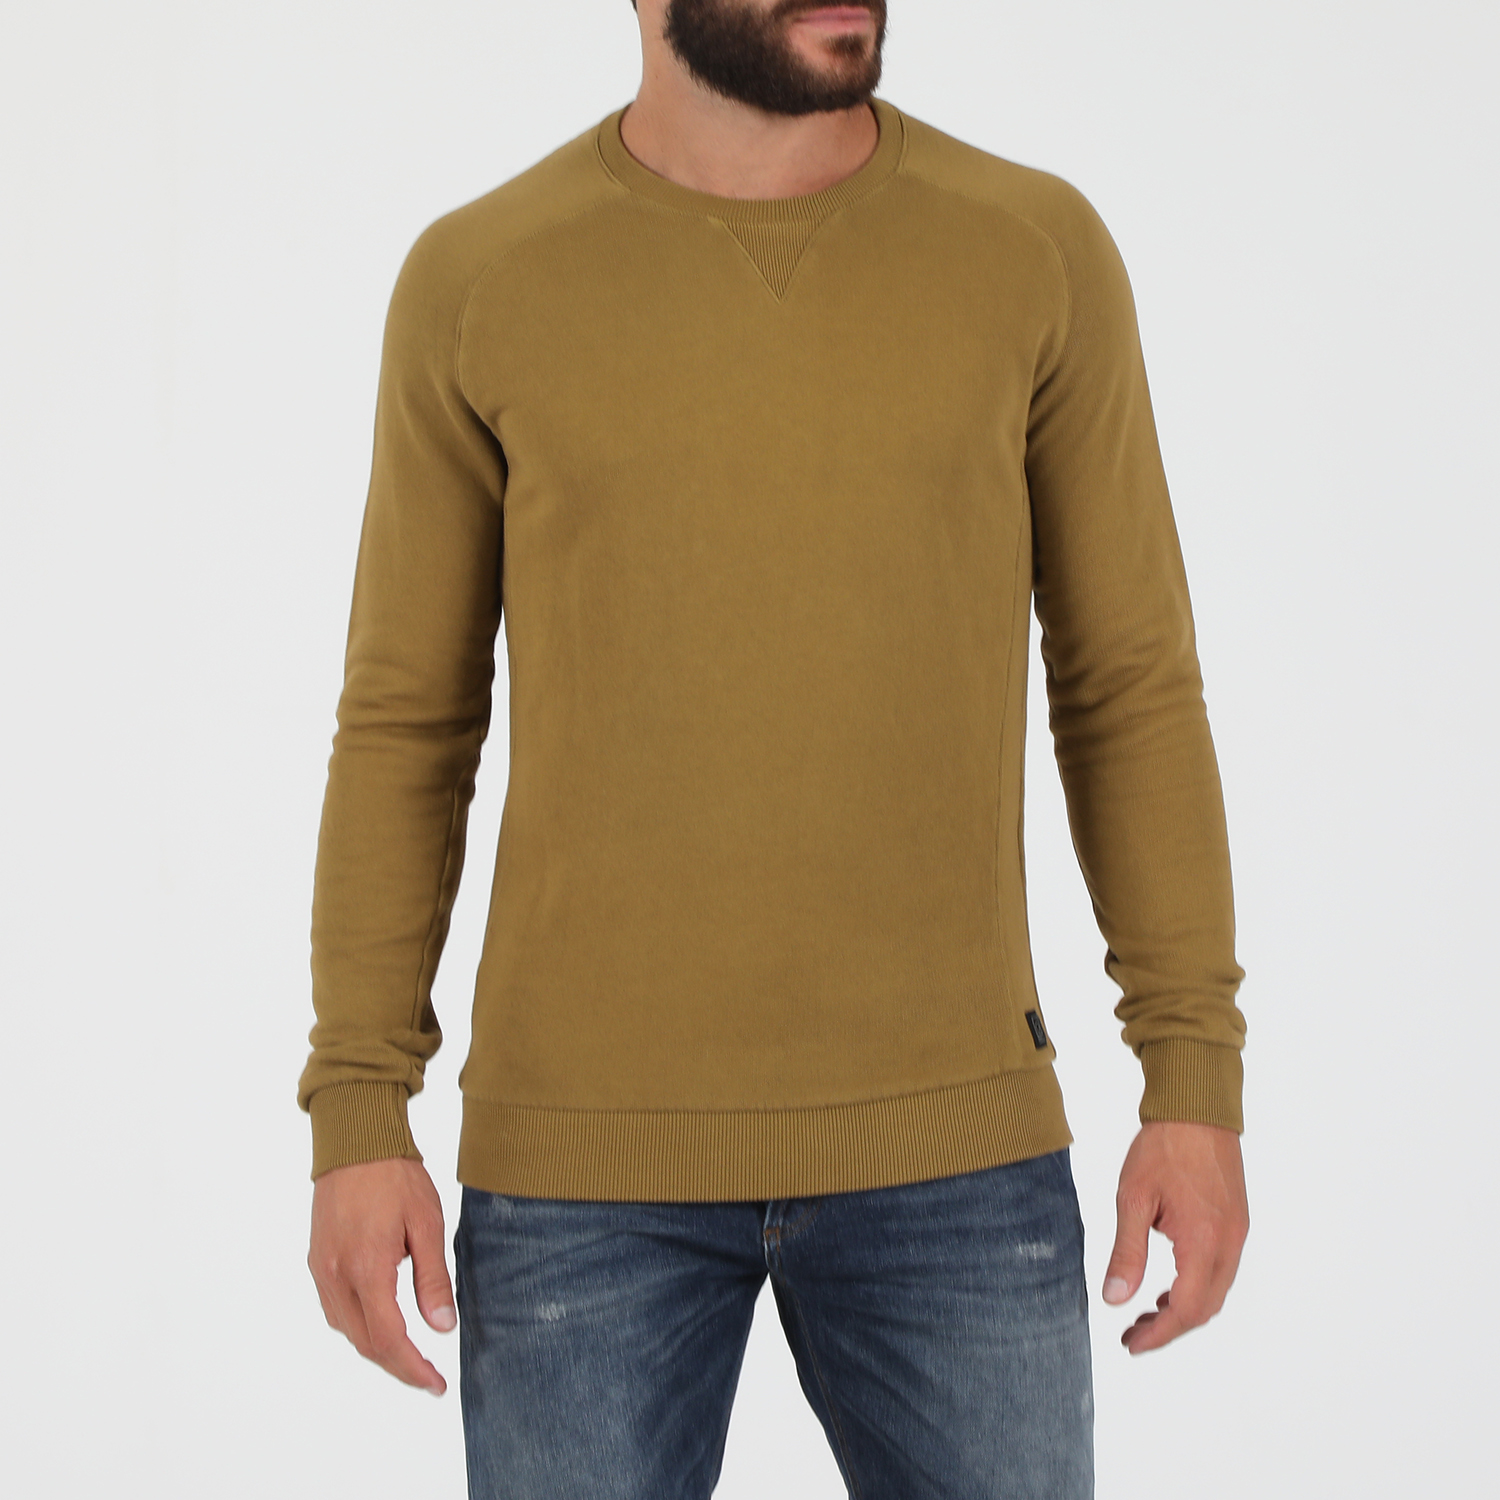 Ανδρικά/Ρούχα/Φούτερ/Μπλούζες DIRTY LAUNDRY - Ανδρική φούτερ μπλούζα DIRTY LAUNDRY COLLEGE CREWNECK κίτρινη